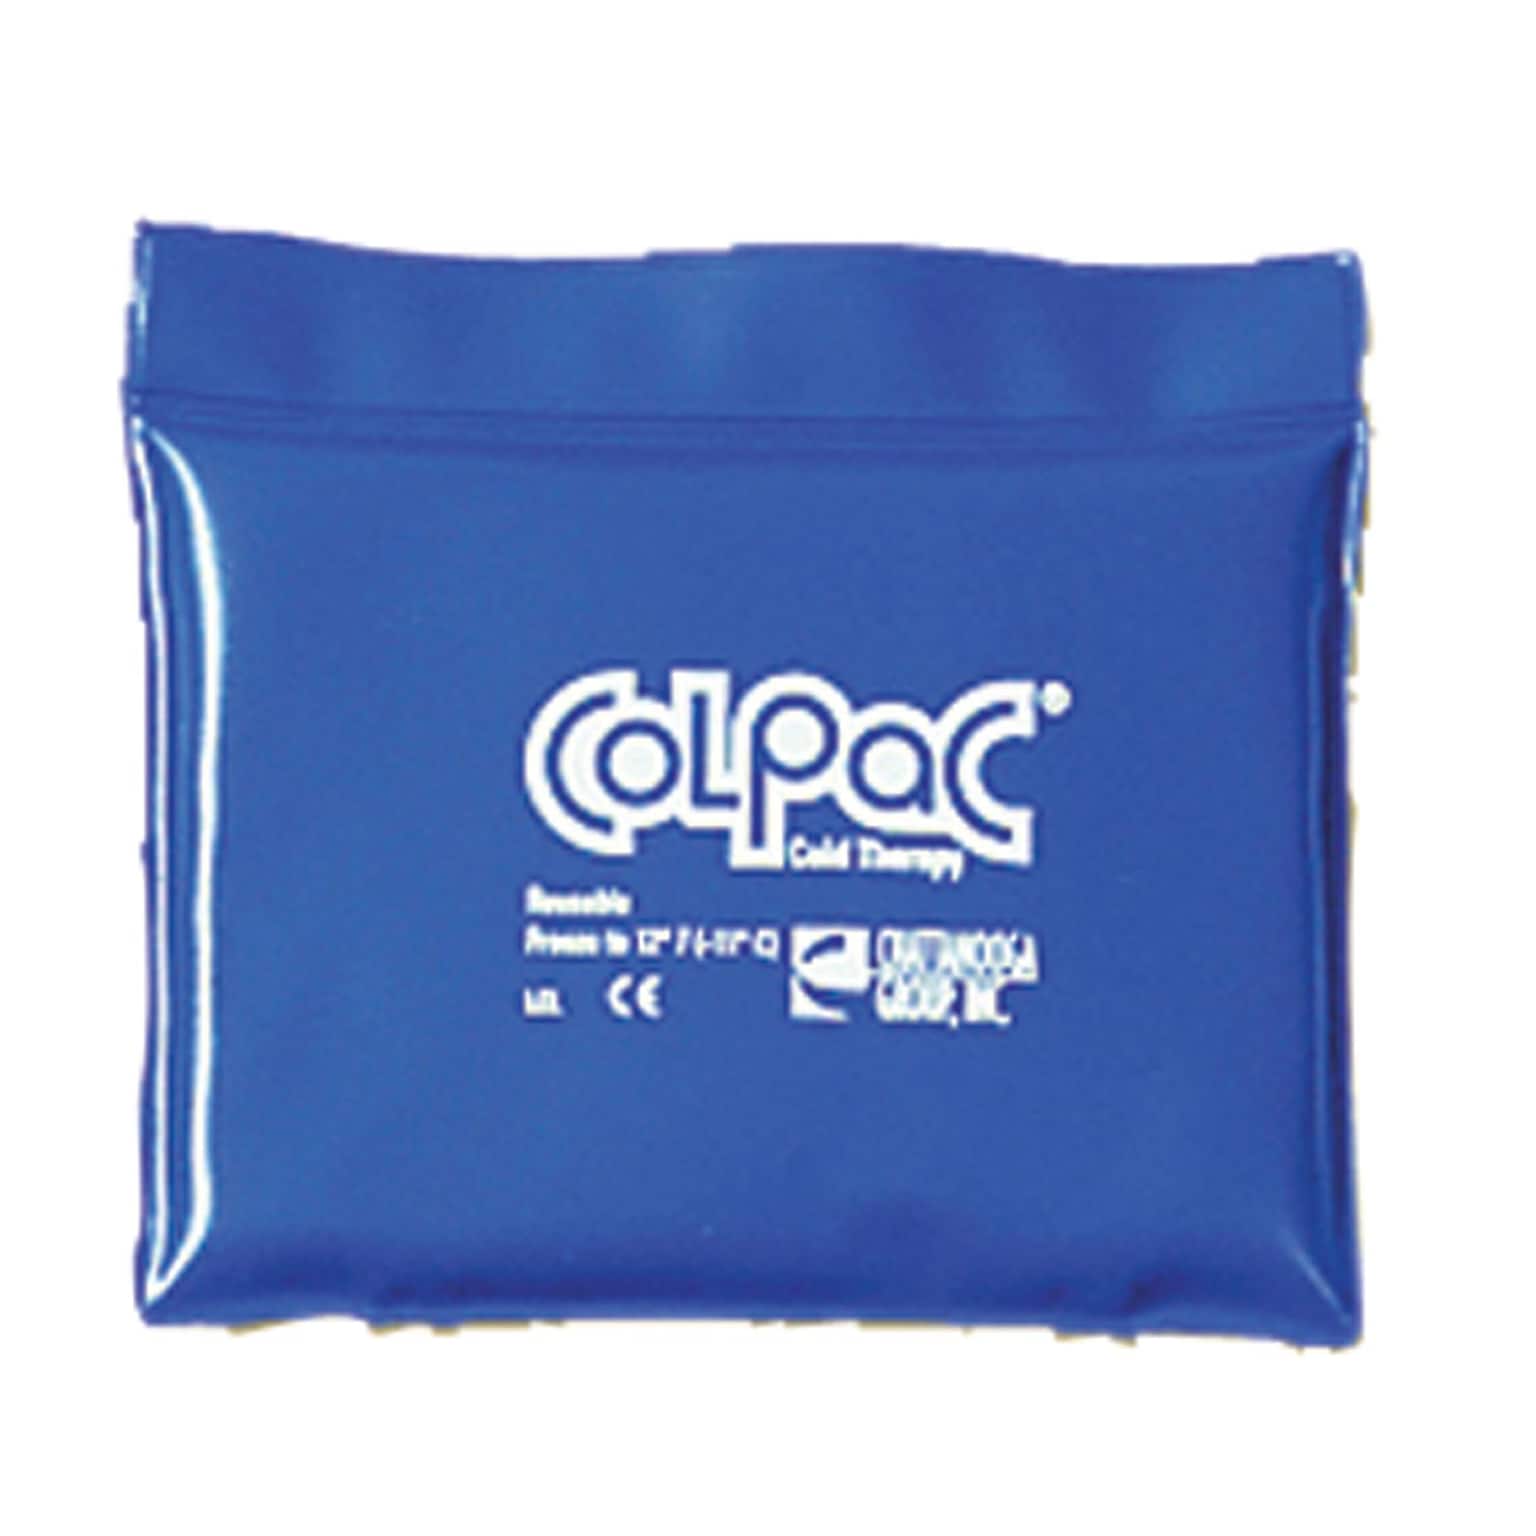 Colpac Blue-Vinyl Reusable Cold Pack, Quartersize (5 x 7)